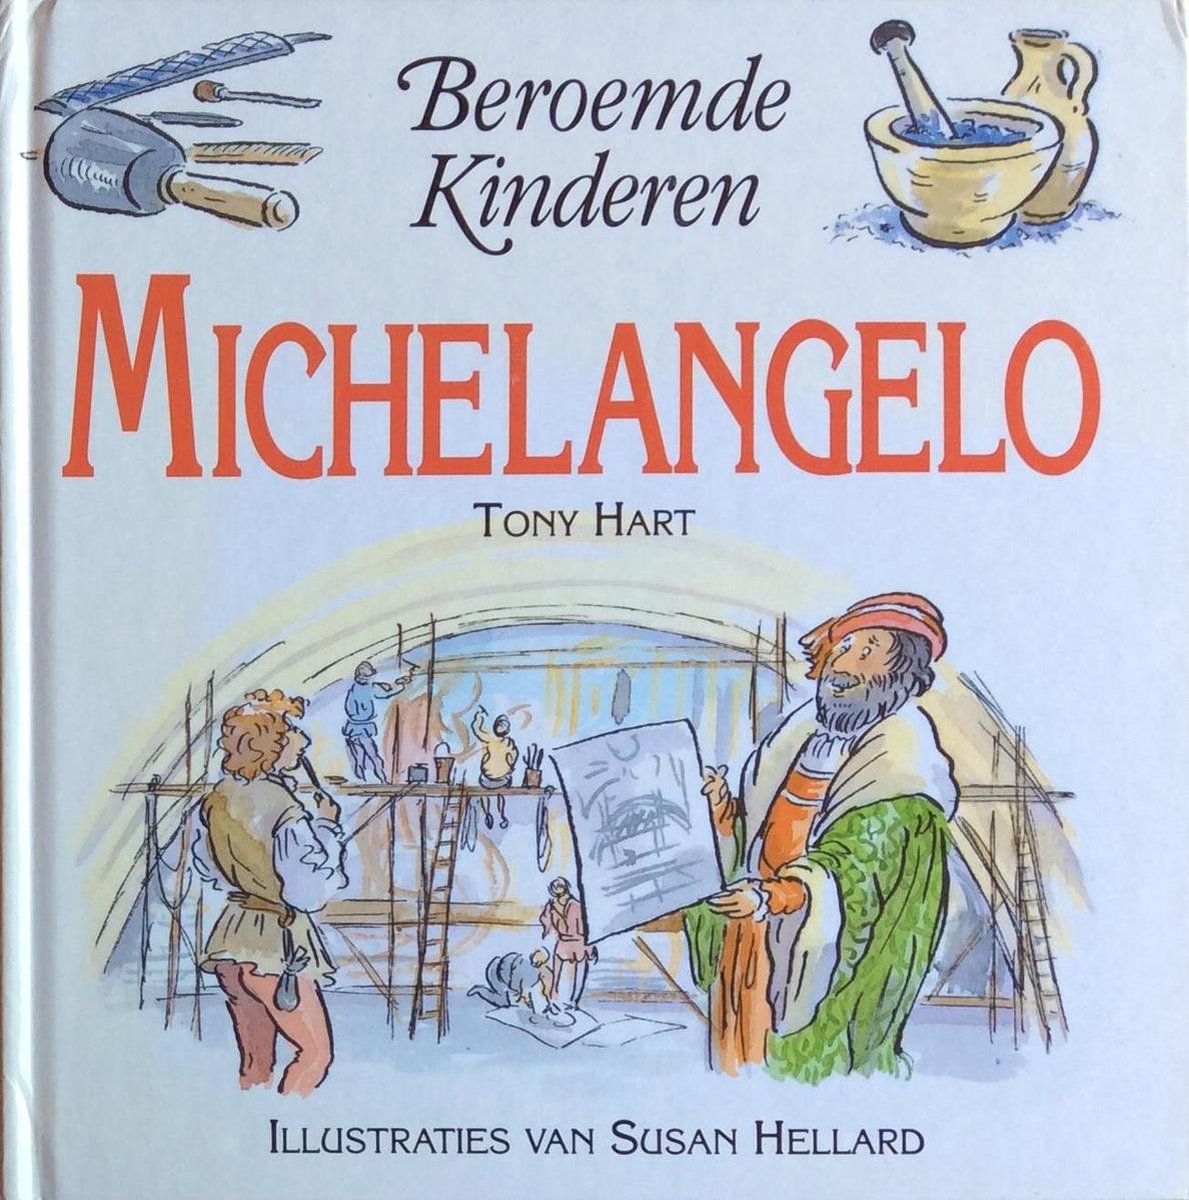 Beroemde kinderen - Michelangelo